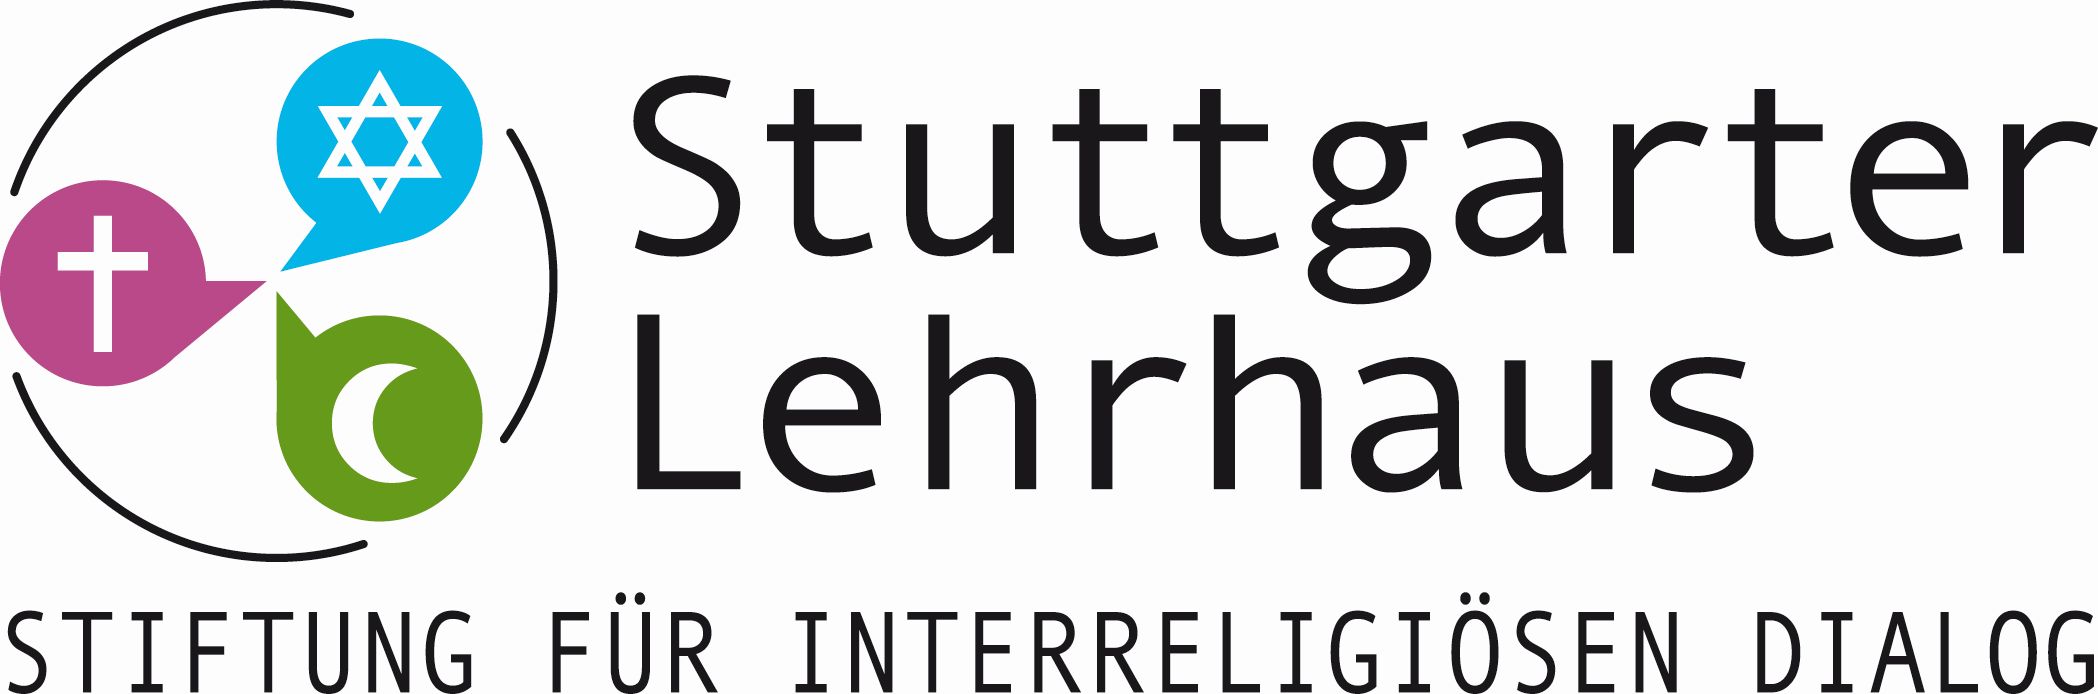 Kooperationspartner Die Tagung wird freundlicherweise finanziell und ideell unterstützt durch die Stiftung Stuttgarter Lehrhaus e. V.